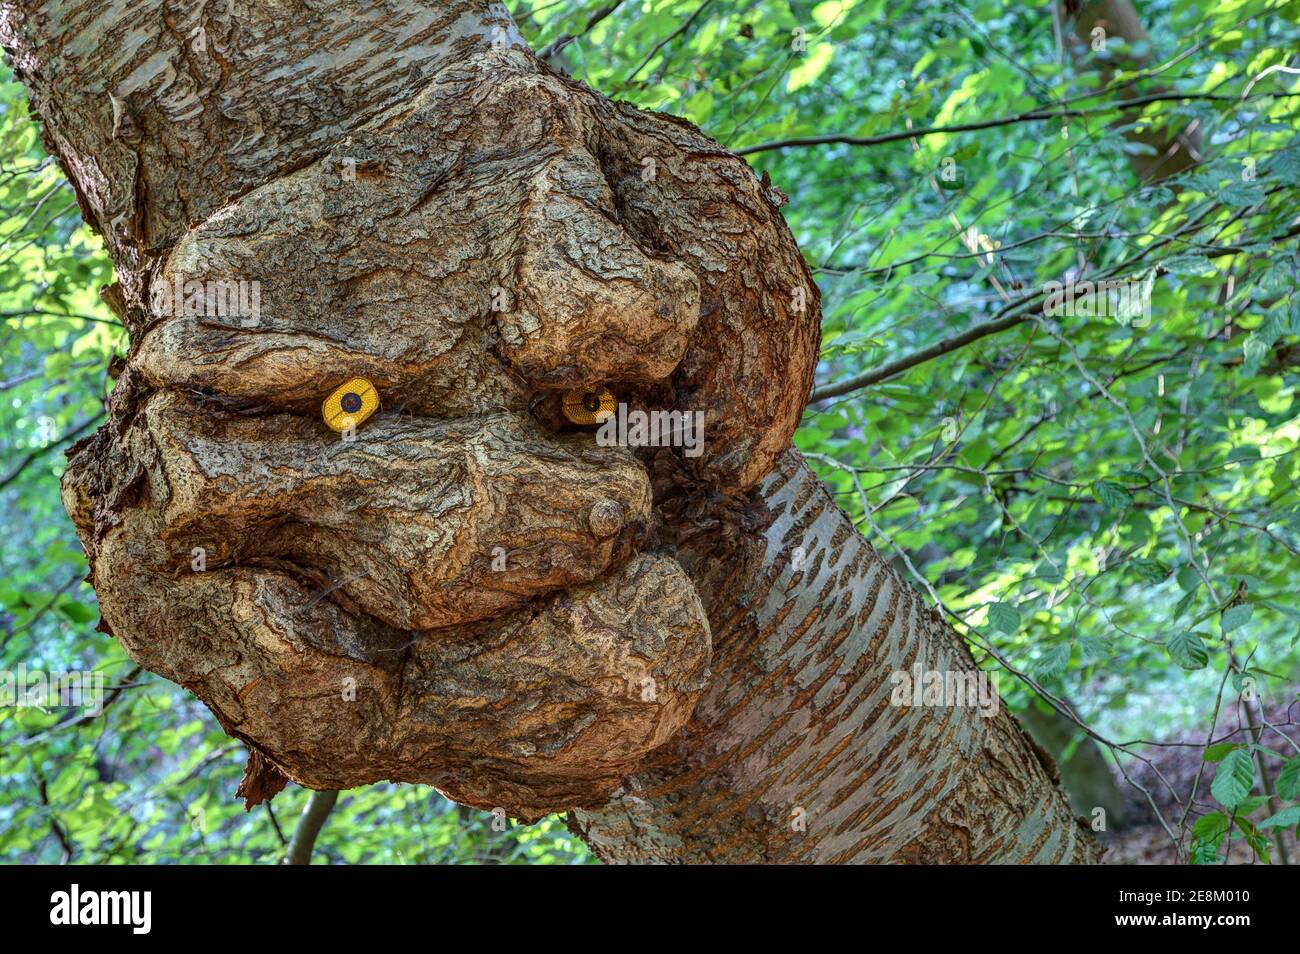 Un fantasma de árbol mira desde el tronco del árbol con una sonrisa y observa el bosque. Una burla extraña deformada en un tronco de árbol. Foto de stock